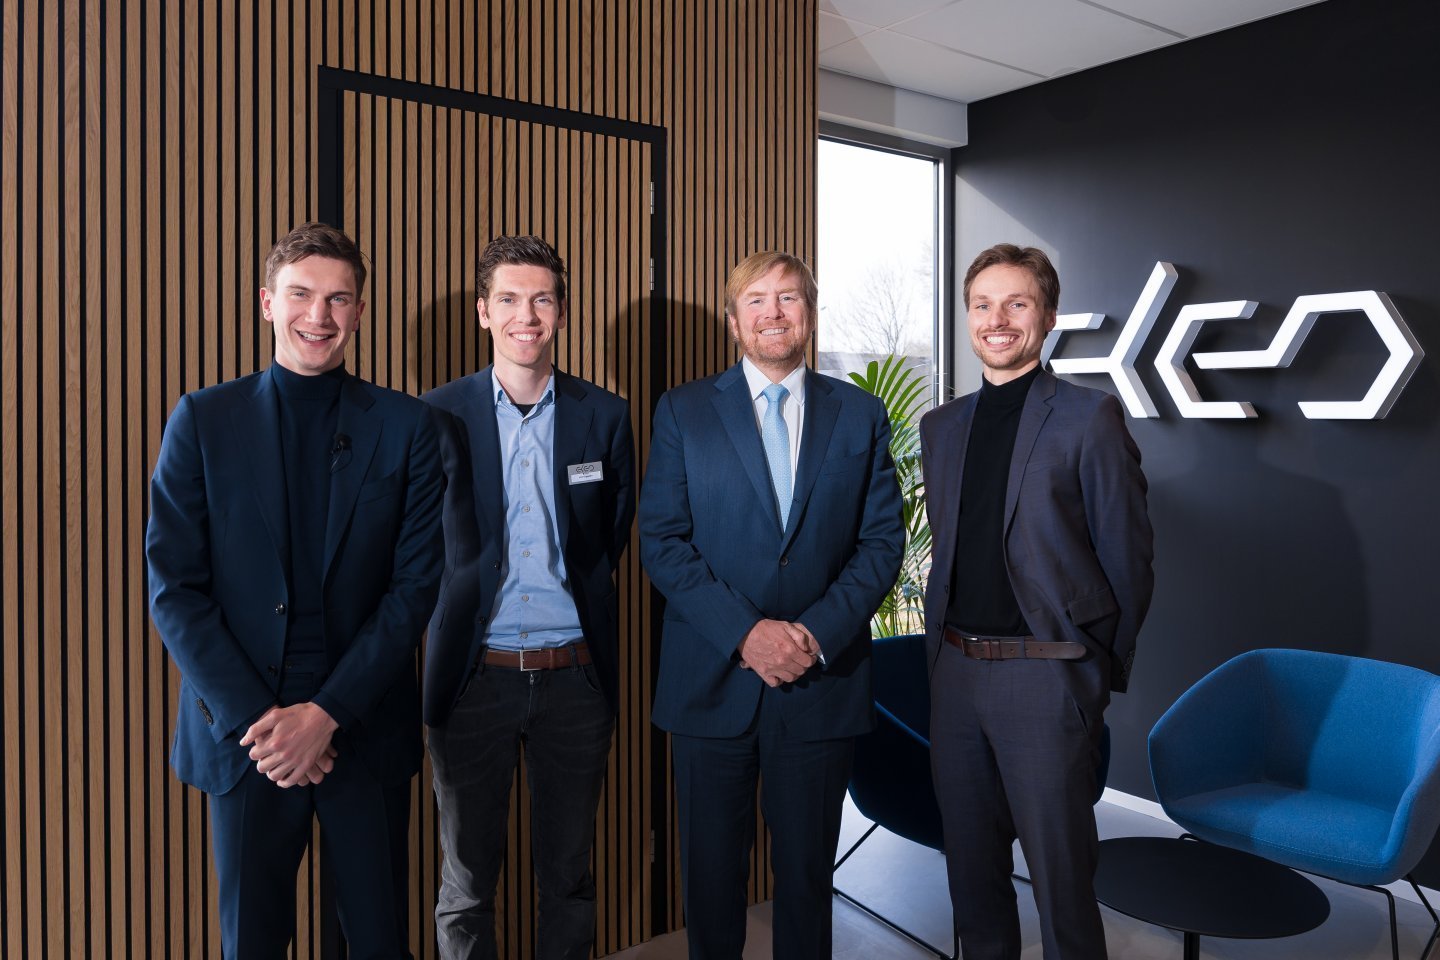 Nieuwe batterijfabriek ELEO geopend door Koning Willem-Alexander